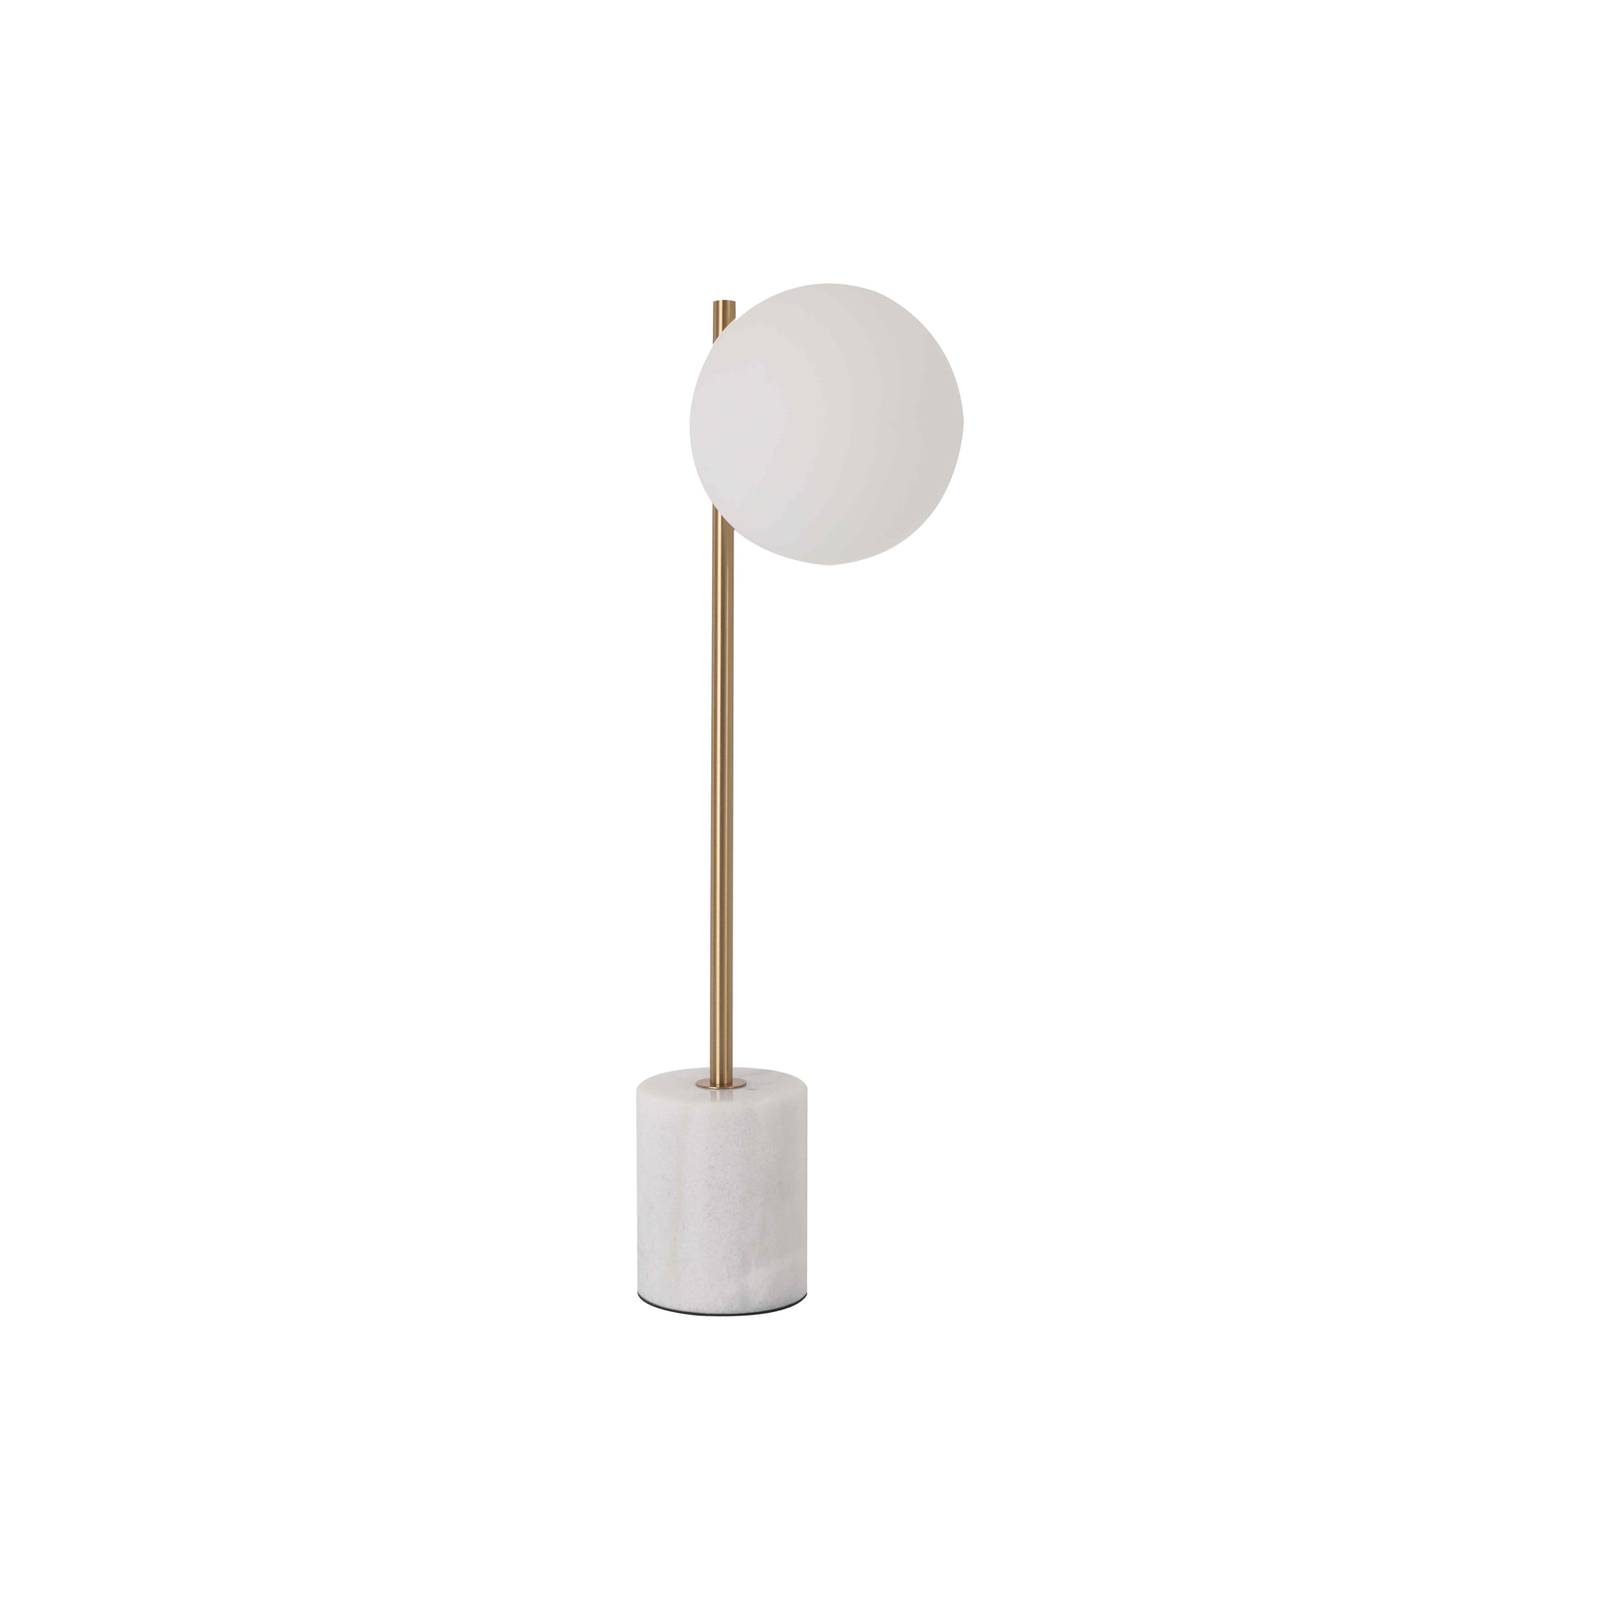 Viokef silvana asztali lámpa, fehér/arany színű